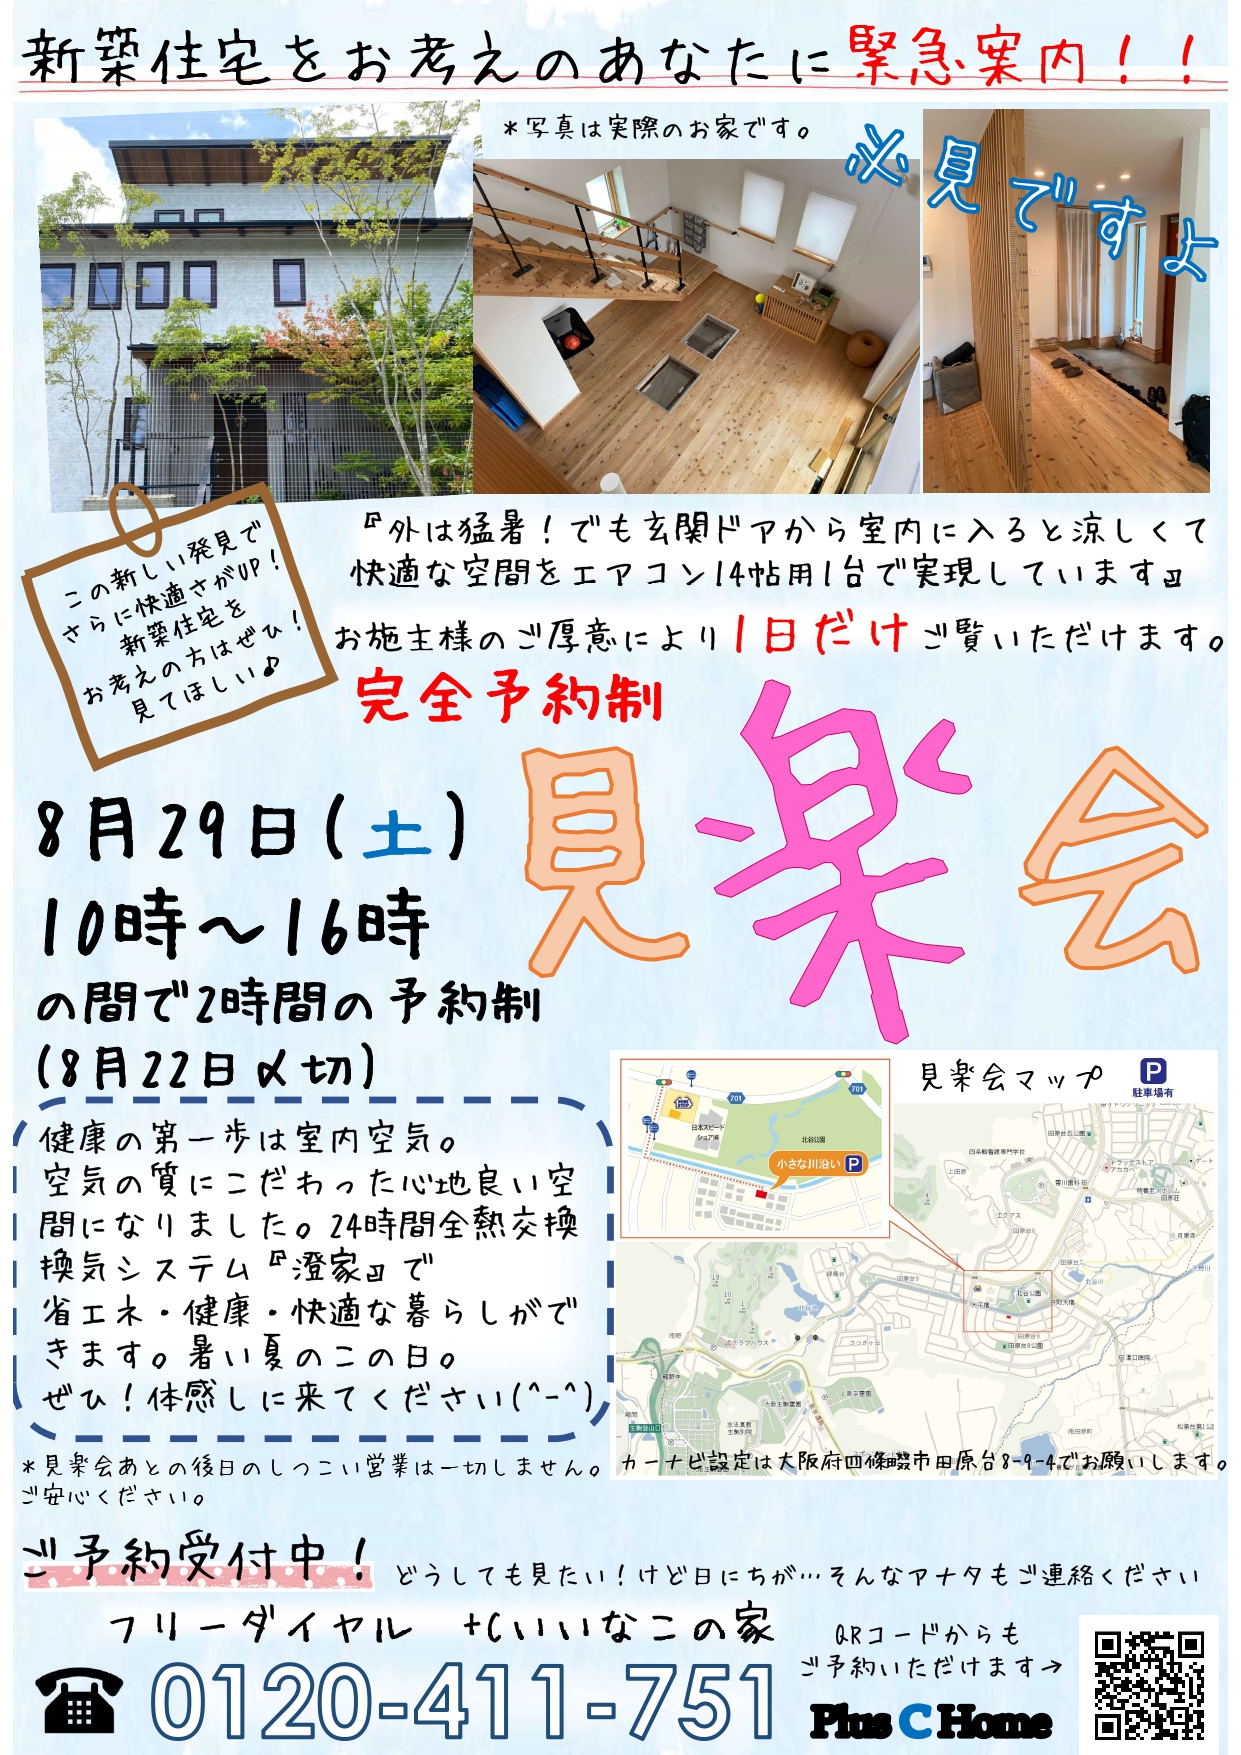 高気密・高断熱住宅を扱う大阪市内の工務店Plus C Homeが住宅見楽会を開催♪